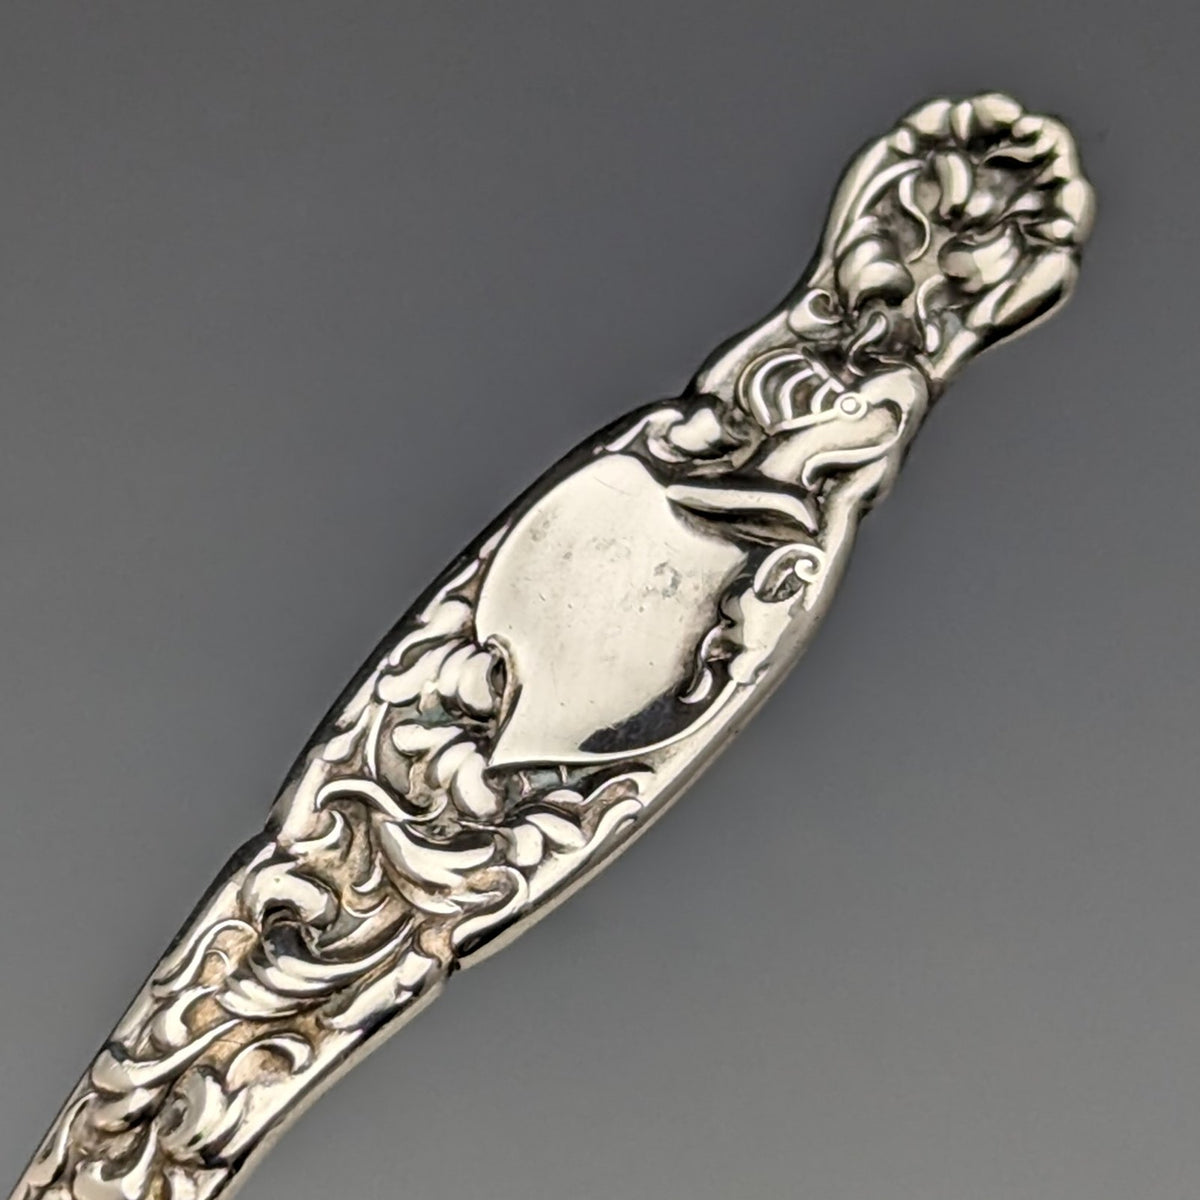 19世紀後半 米国アンティーク 純銀製ティーキャディースプーン Whiting Manufacturing目立った傷や汚れのない美品機能